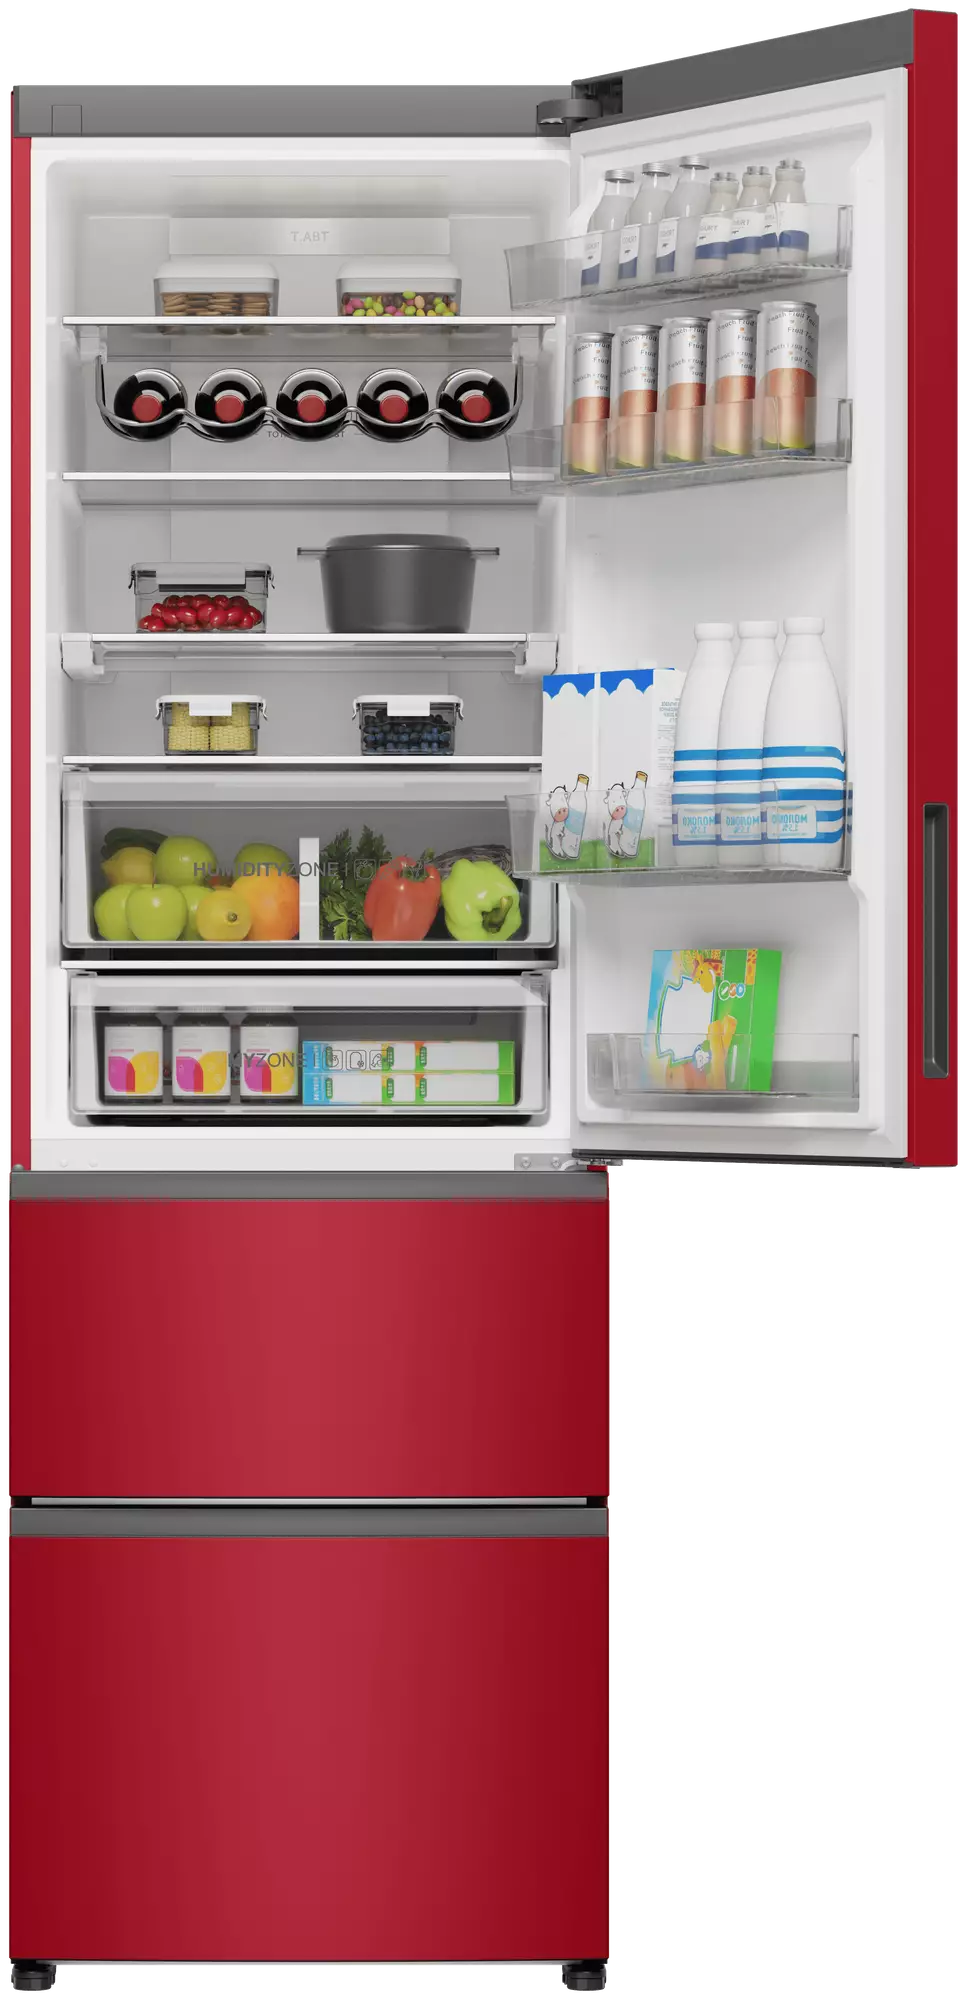 Холодильник Haier A4F637CRMVU1